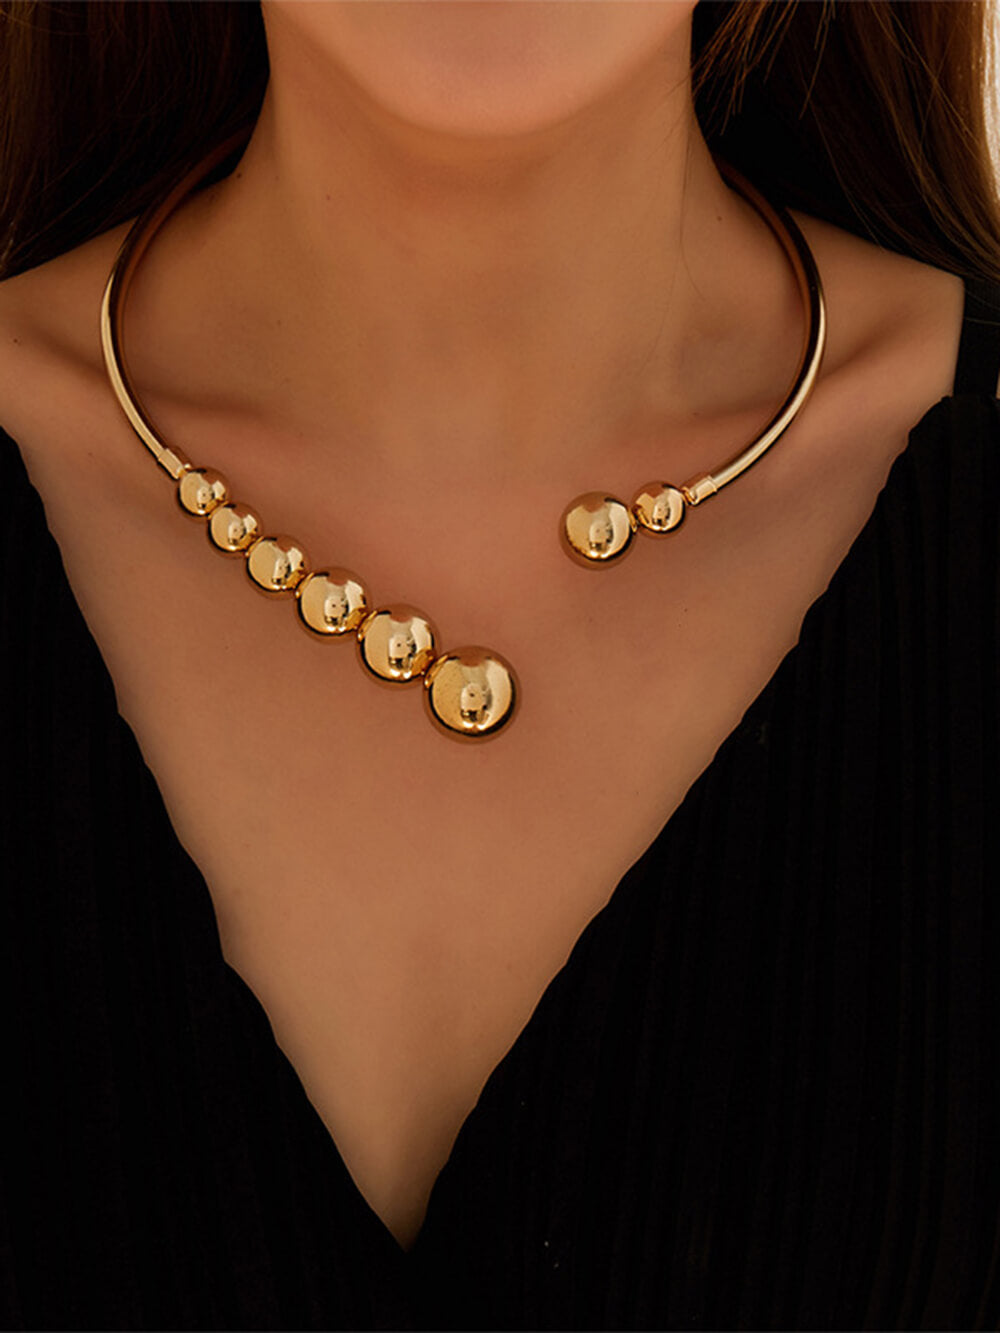 Nádherný náhrdelník s malými zlatými korálky a otevřeným řetízkem klíční kosti